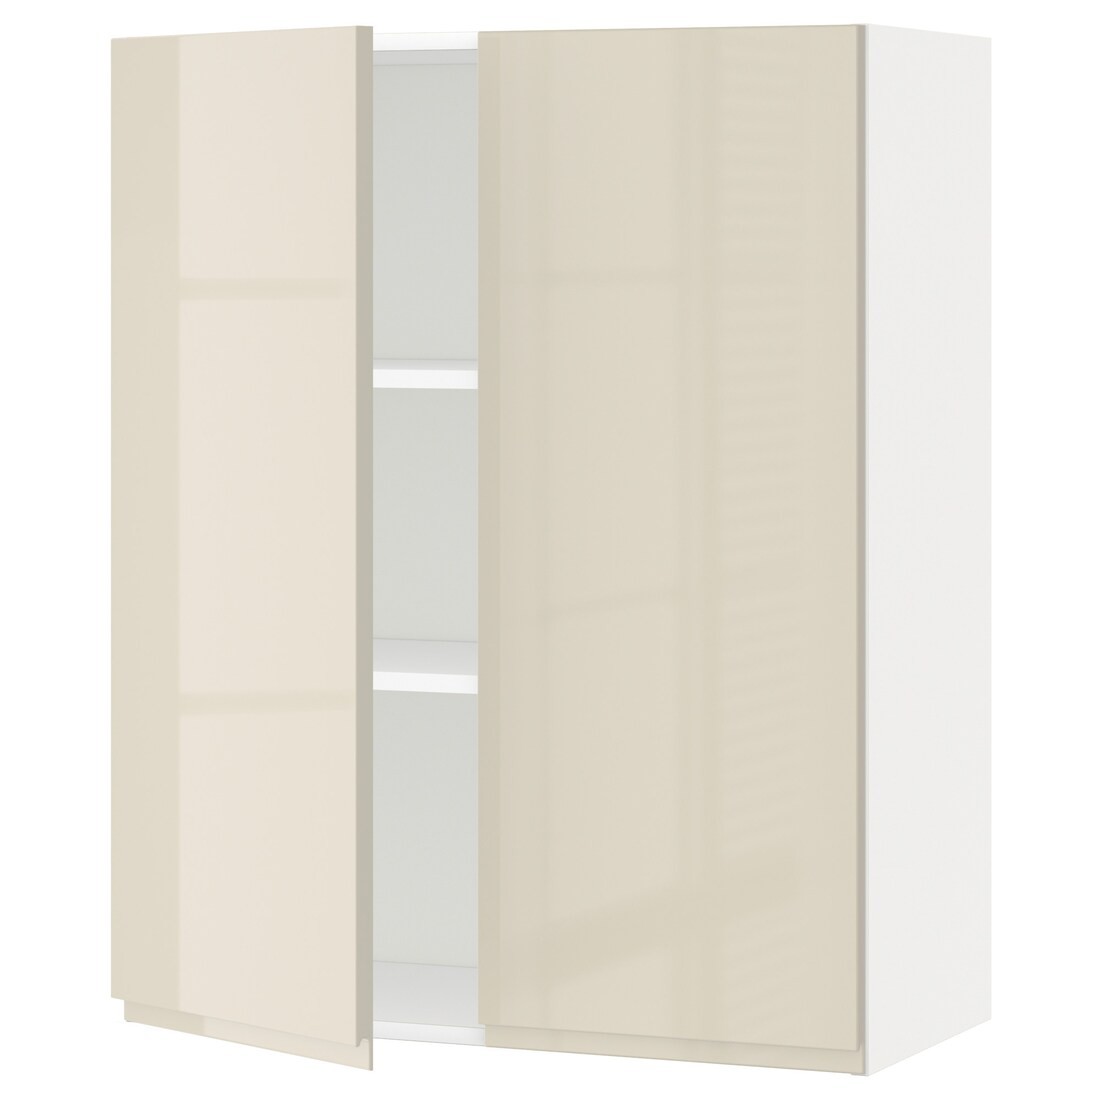 IKEA METOD МЕТОД Навесной шкаф с полками / 2 дверцы, белый / Voxtorp глянцевый светло-бежевый, 80x100 см 69457898 694.578.98